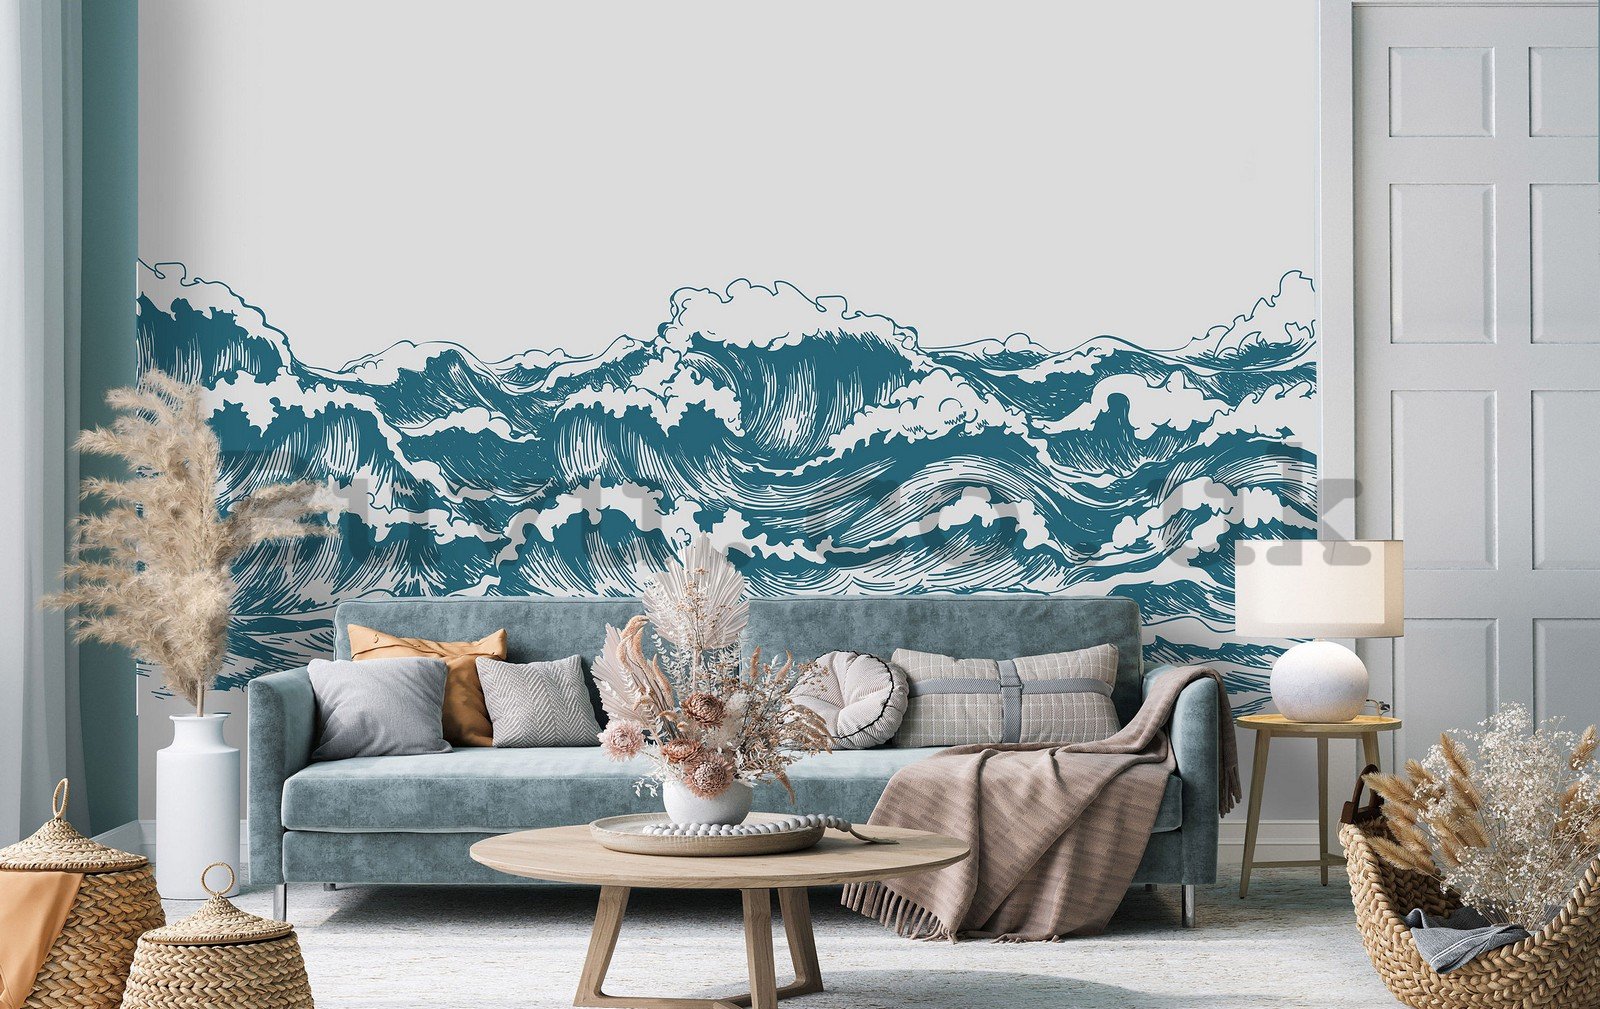 Wall mural vlies: Painted waves - 254x184 cm